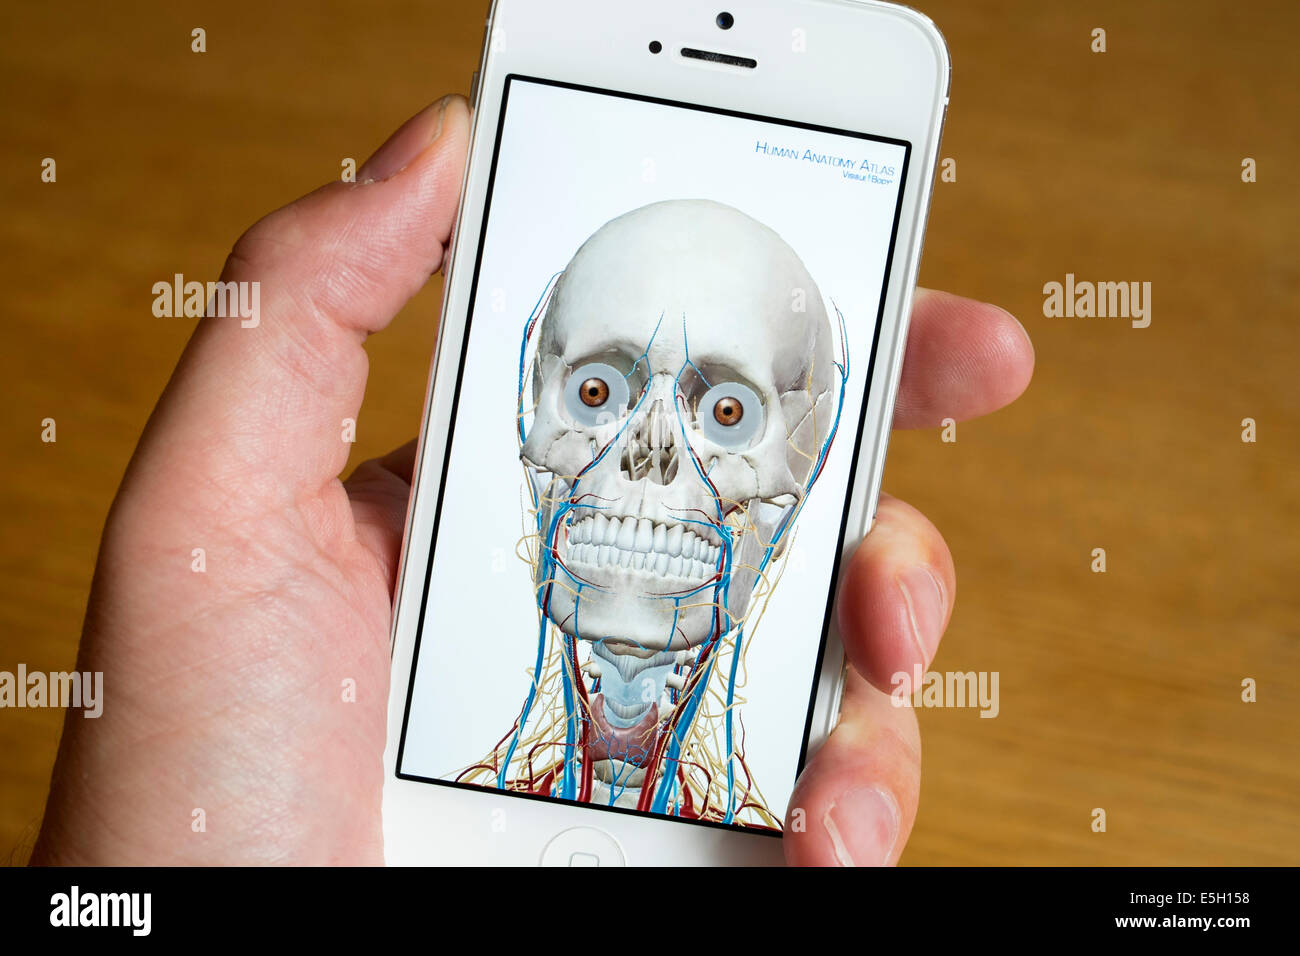 En utilisant app médicale d'étudier l'anatomie humaine sur un iPhone smart phone Banque D'Images